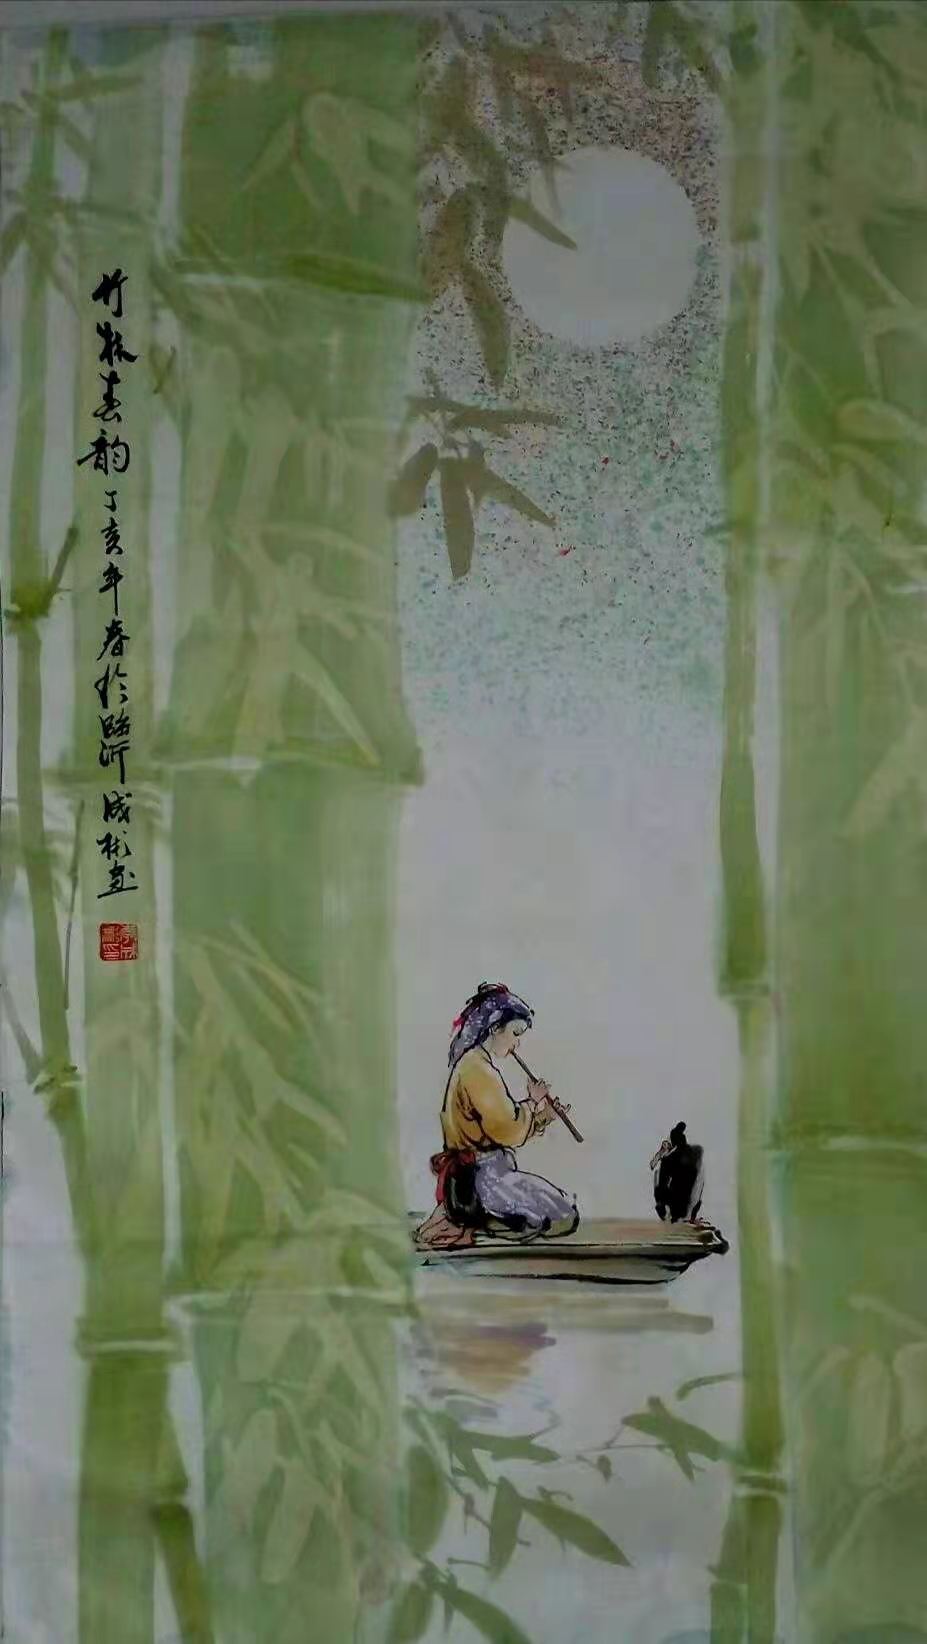 中国大众文化学会名人书画艺术发展委员会——李成彬